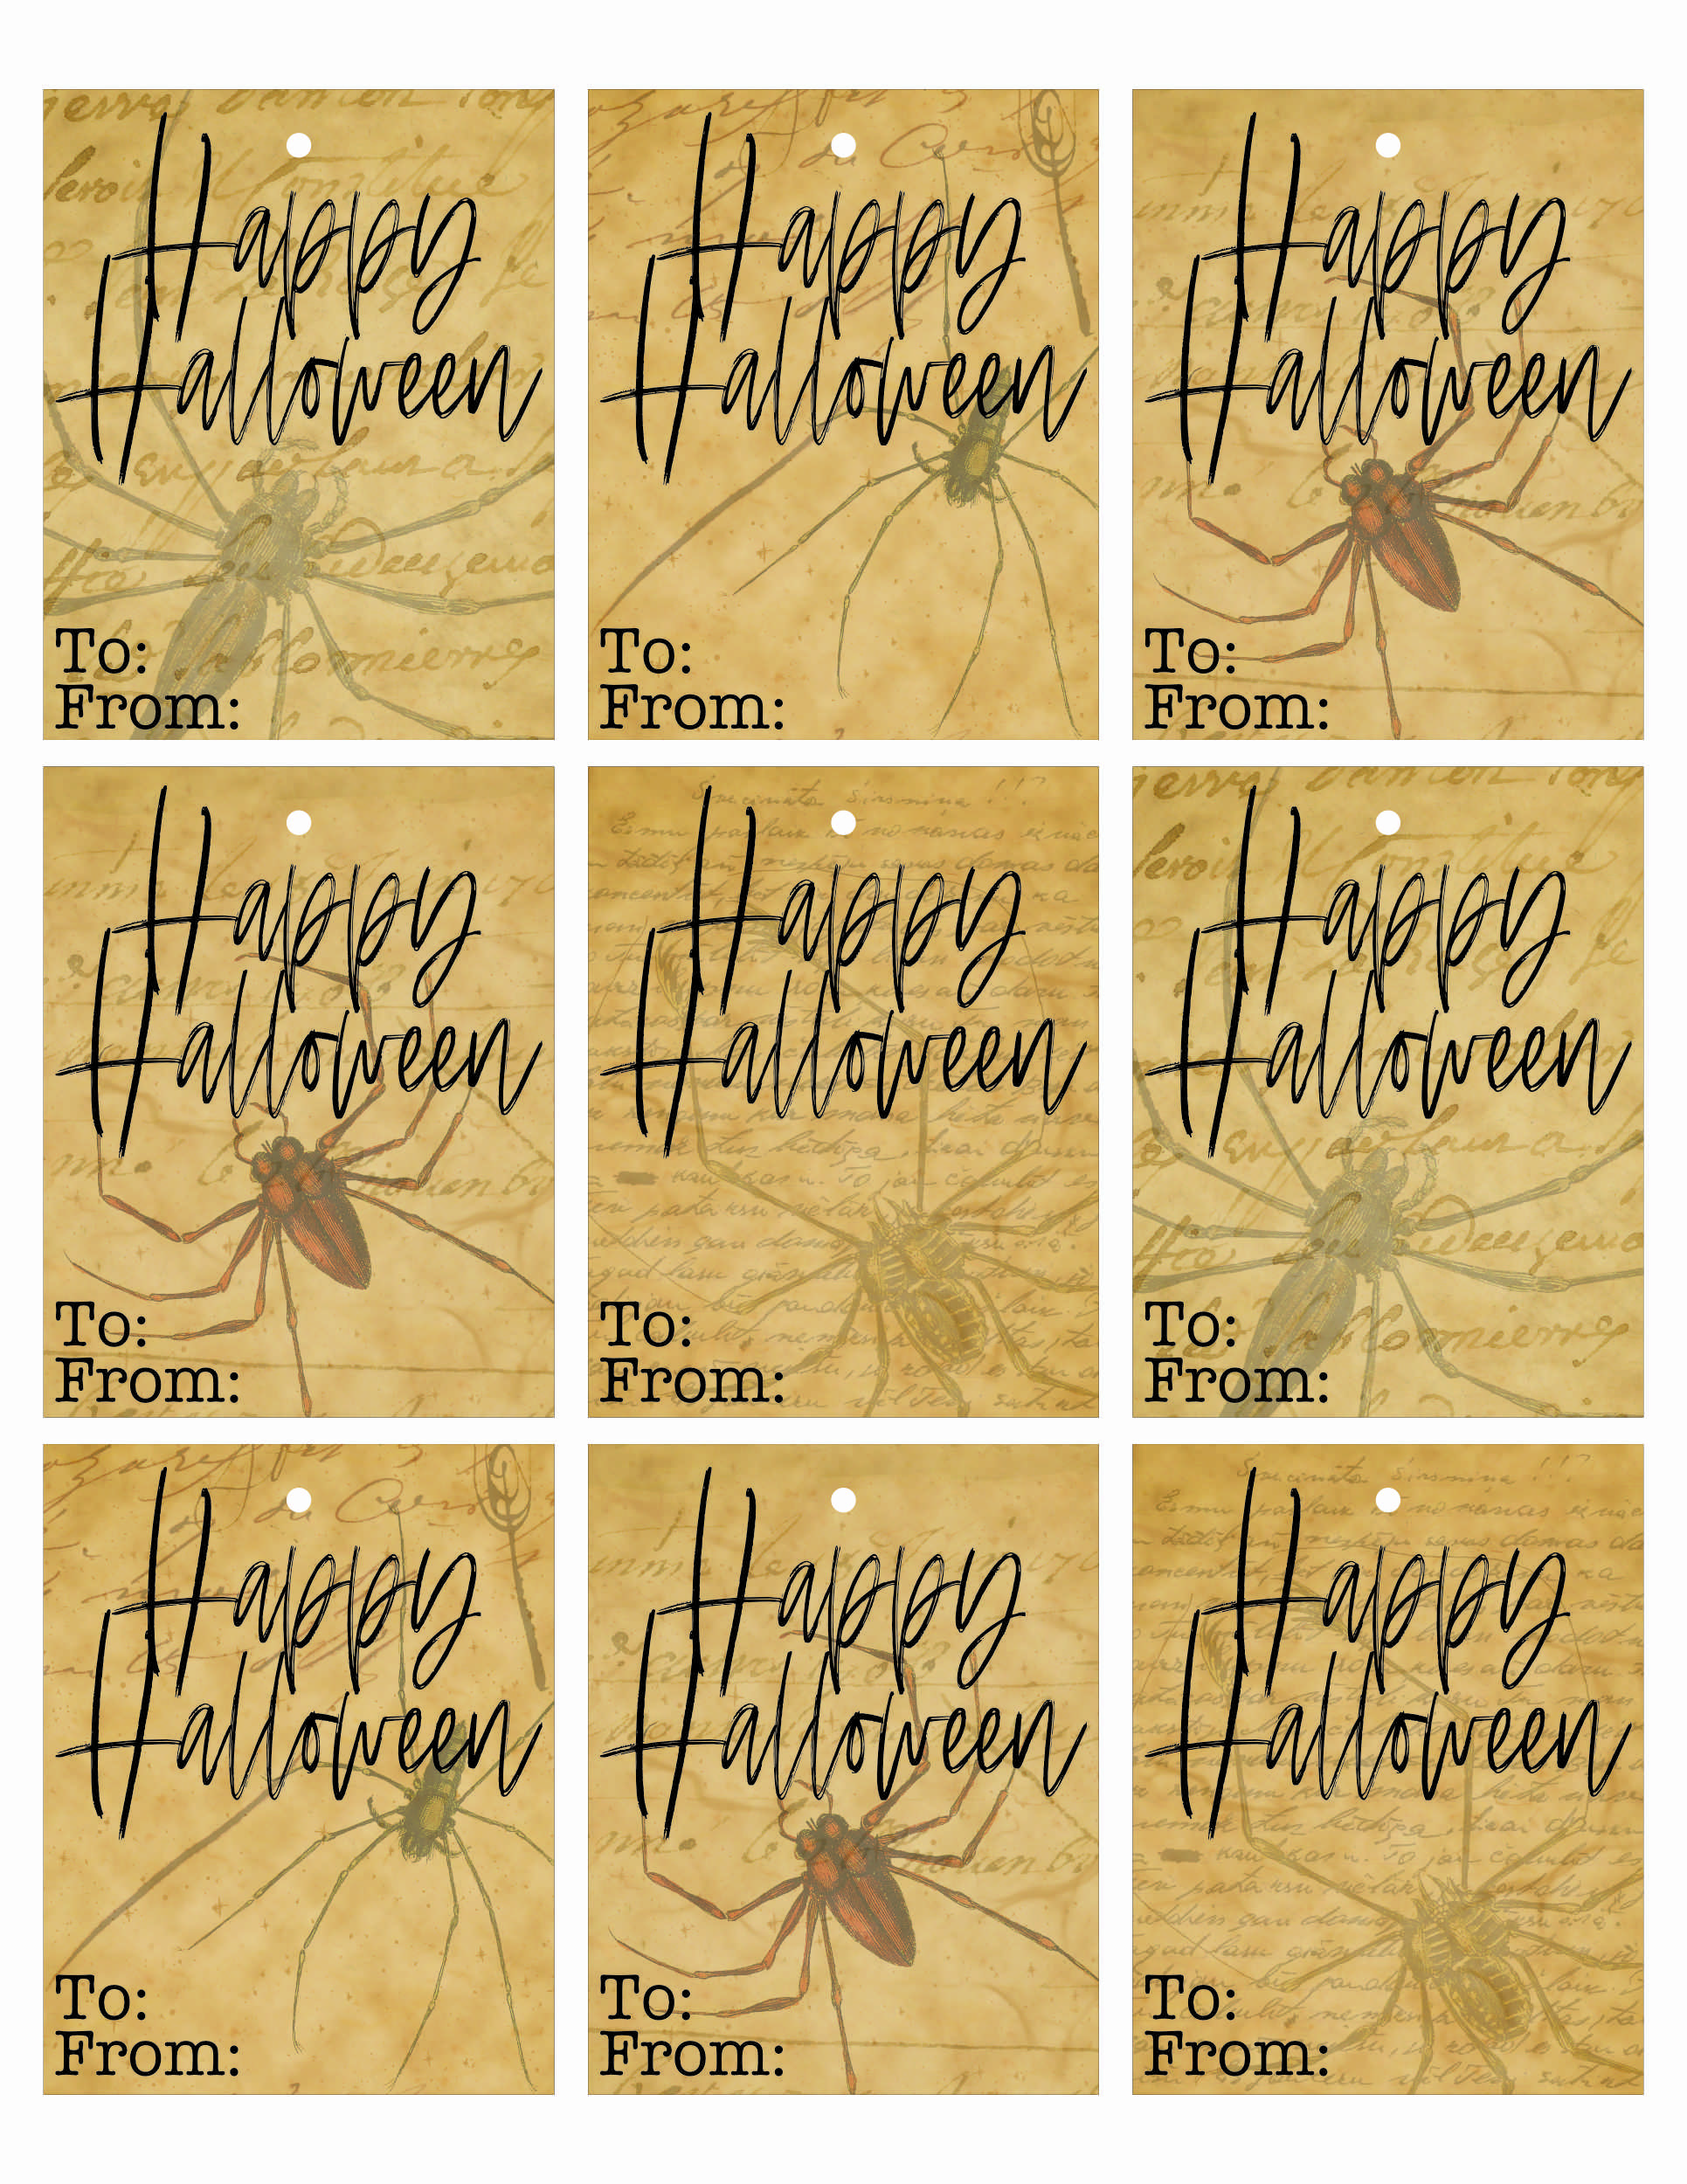 Printable Halloween Tags